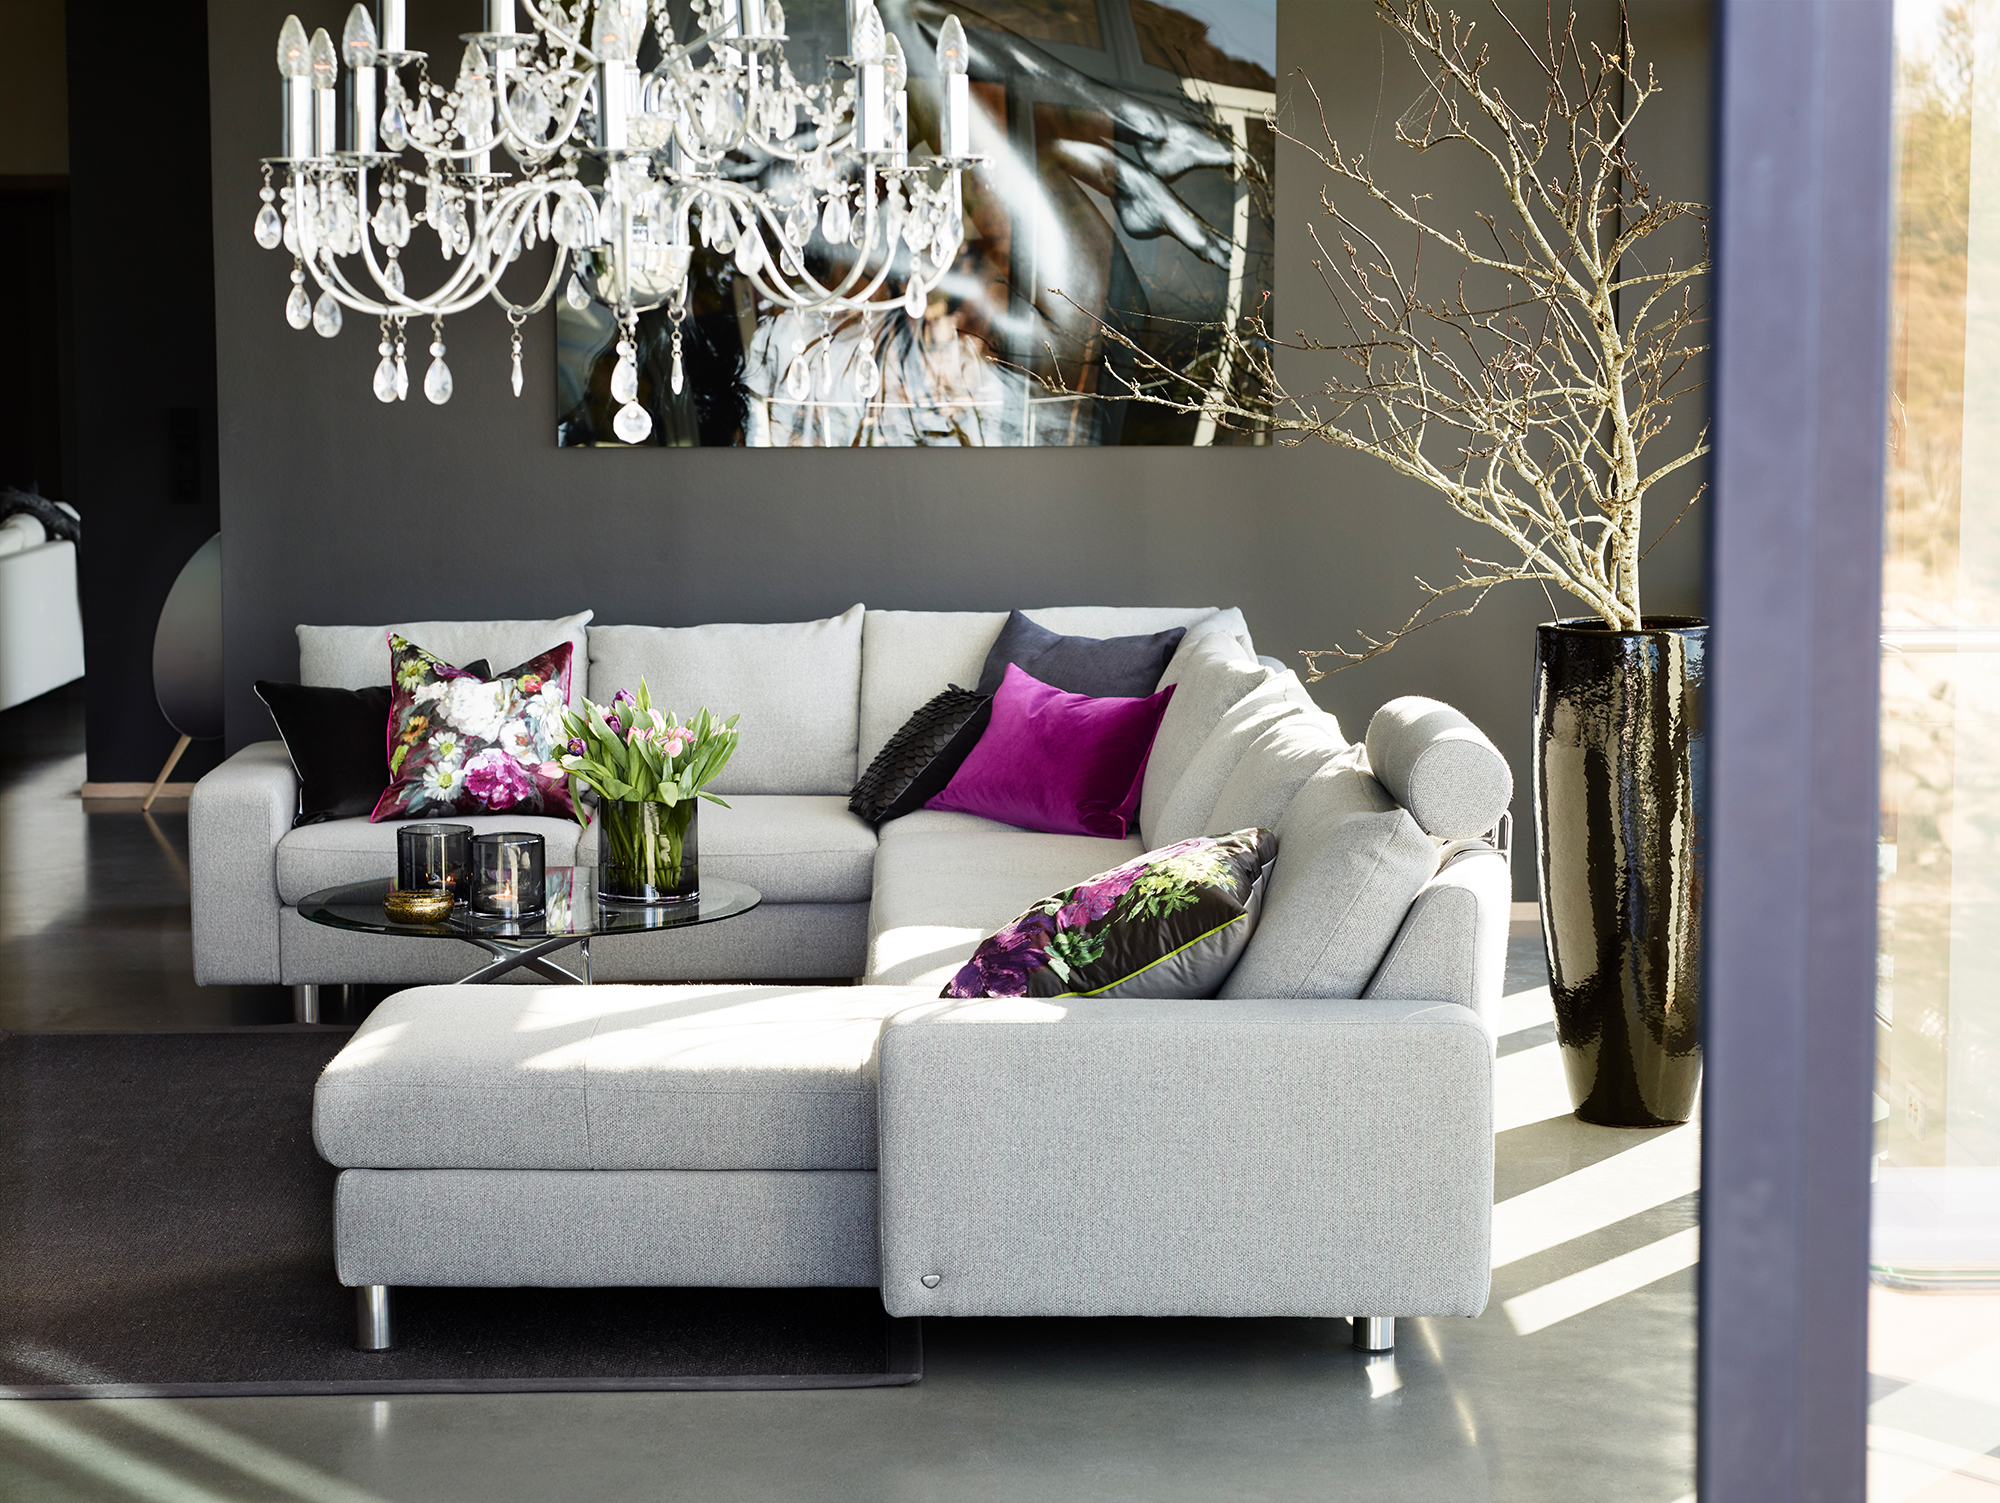 Das Stressless Sofa Emma E200 in Grau und Deko in Violett, der Farbe des Jahres 2018, lädt zum Entspannen ein.